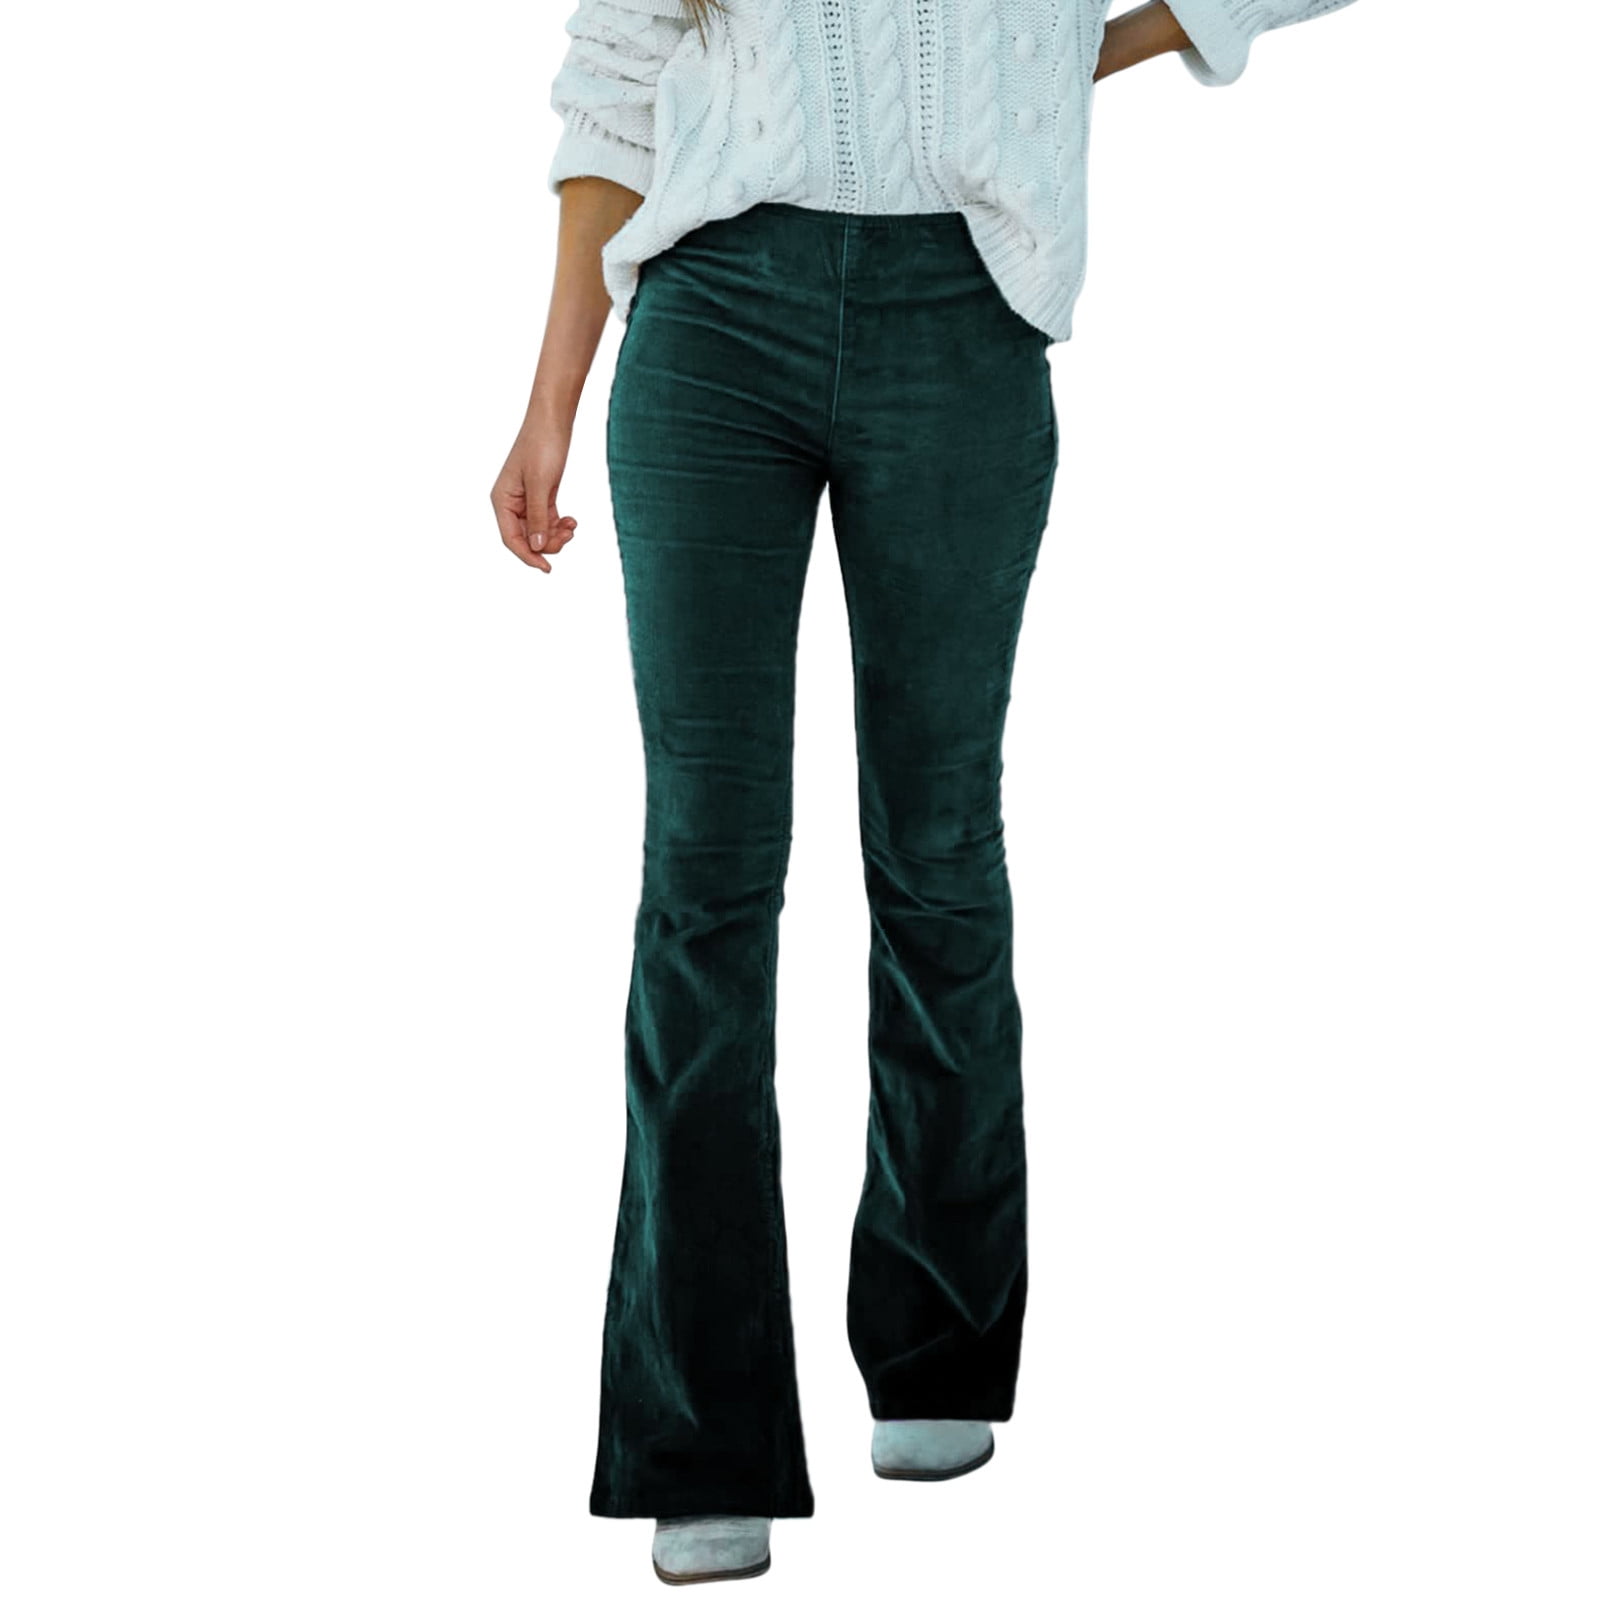 ketyyh-chn99 Green Cargo Pants For Women Women's Work Ankle Dress Pants  Trousers Slacks - Walmart.com